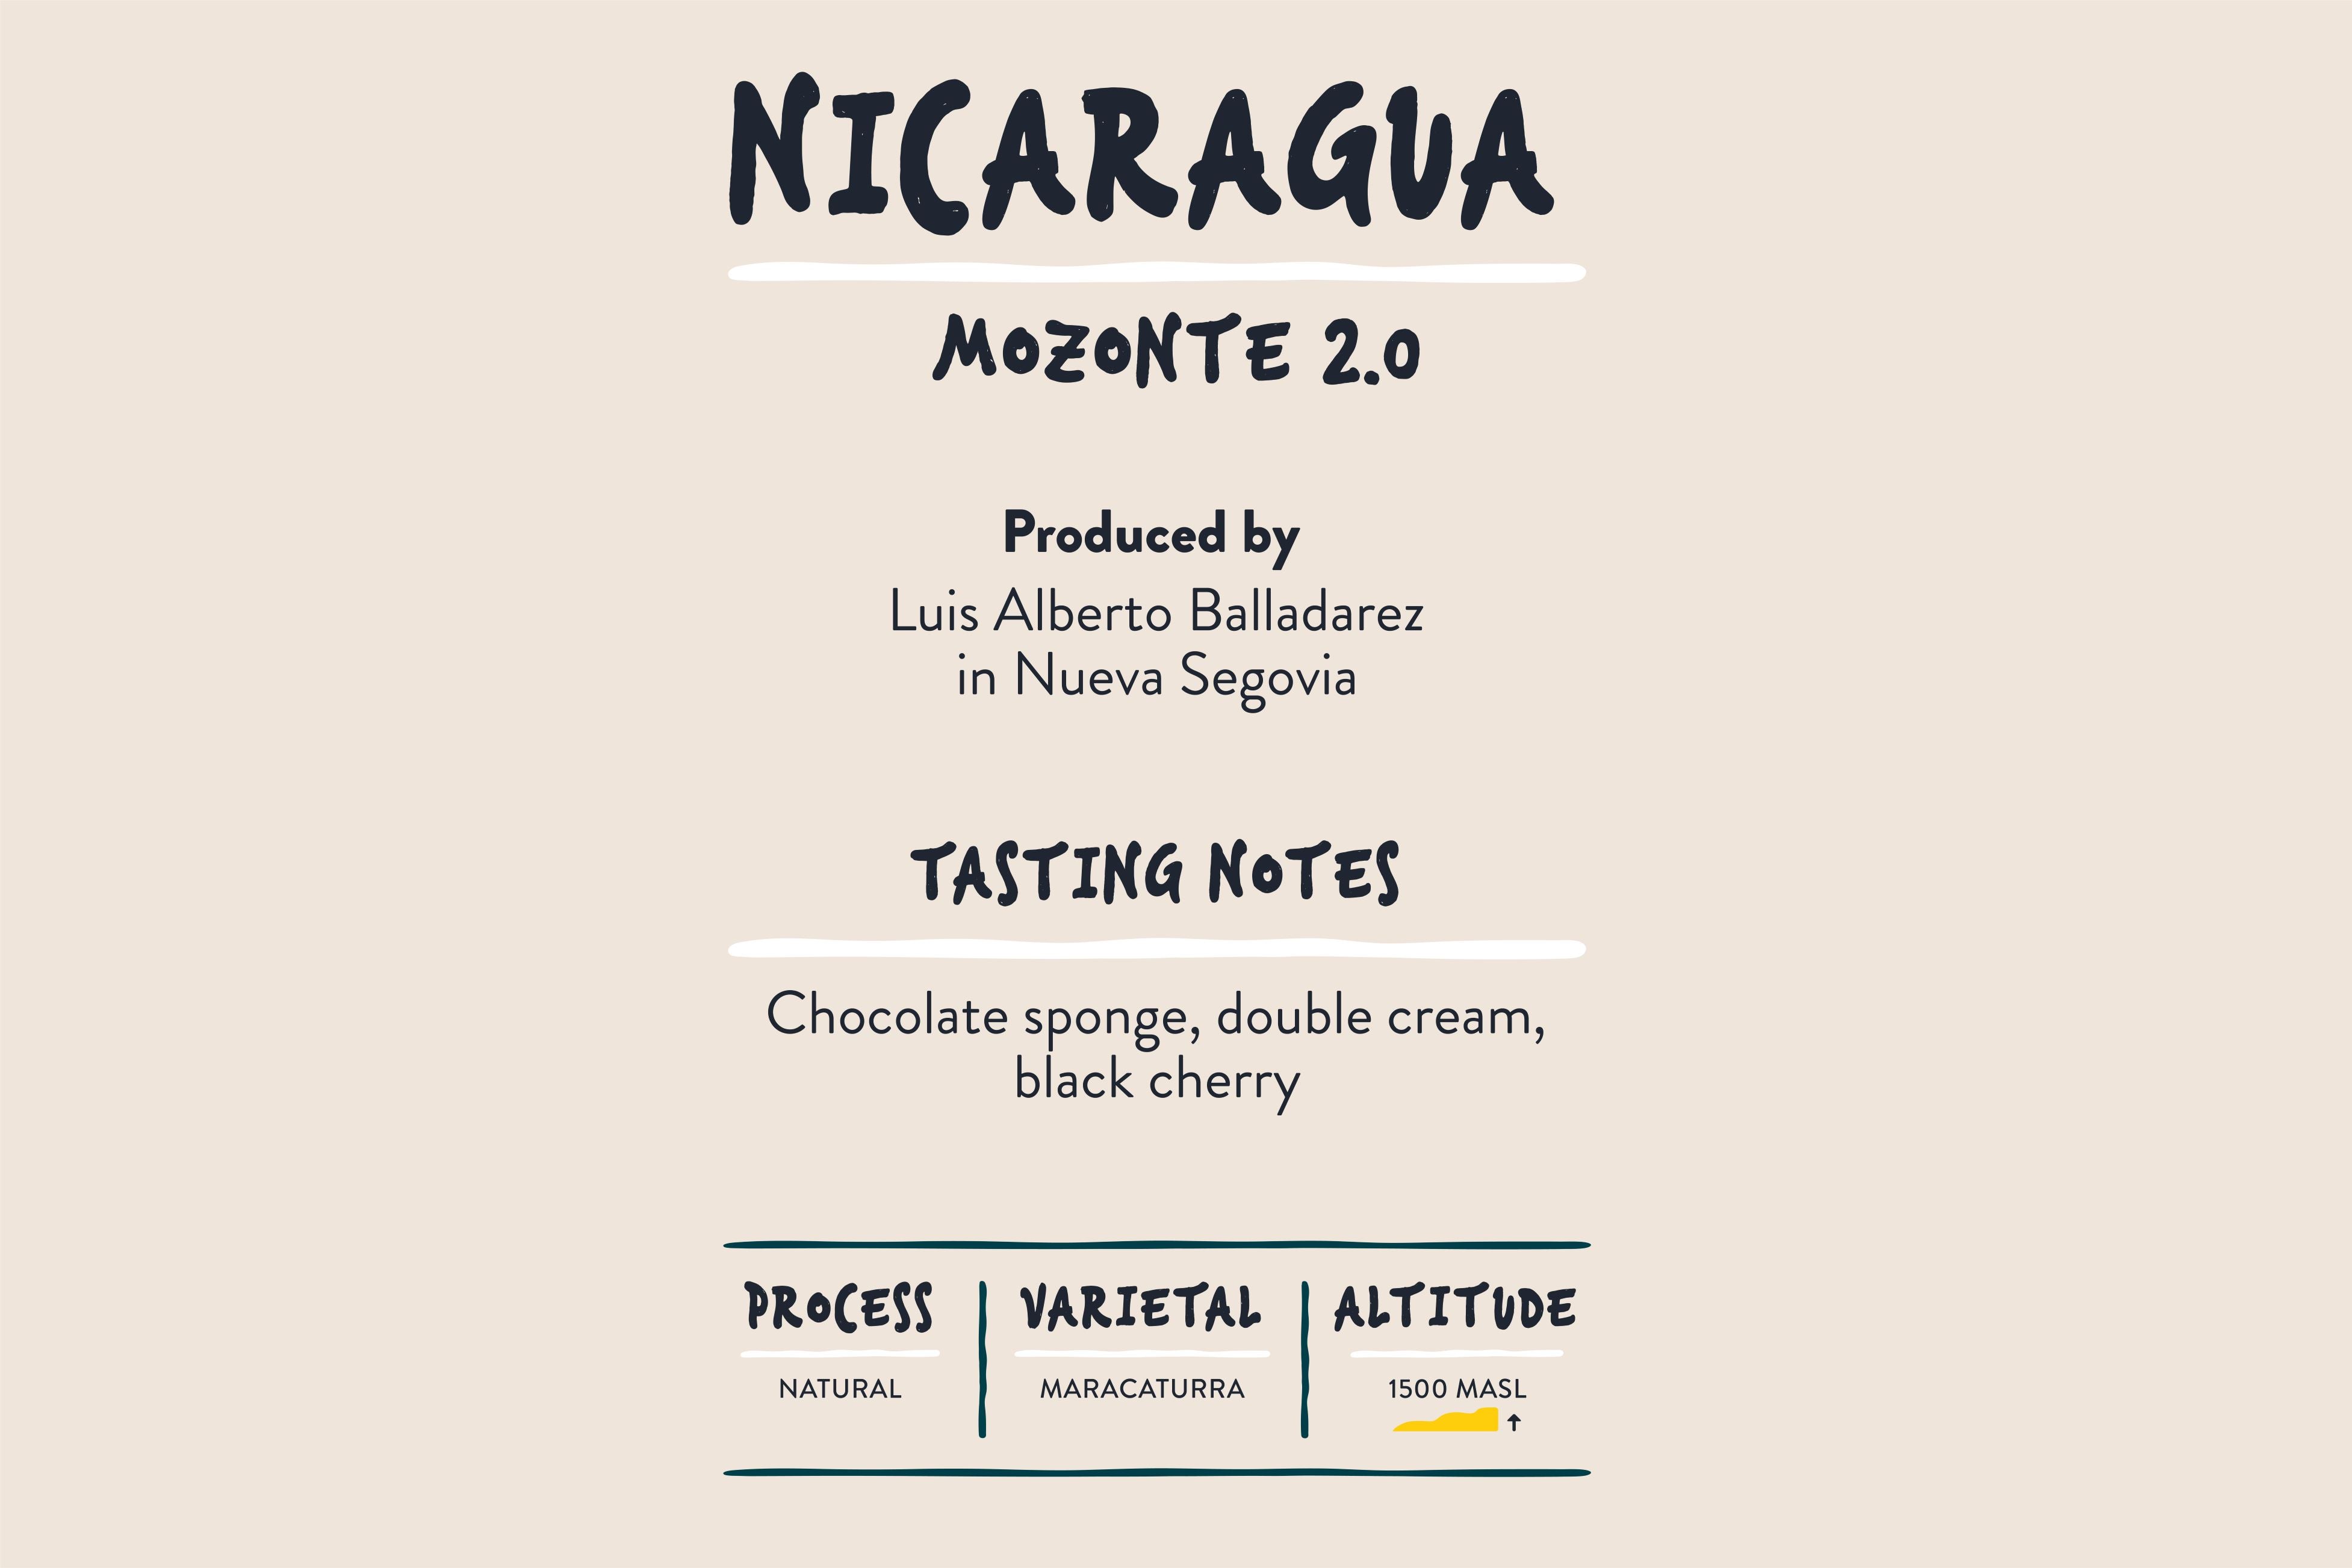 Mozonte 2.0, Nicaragua